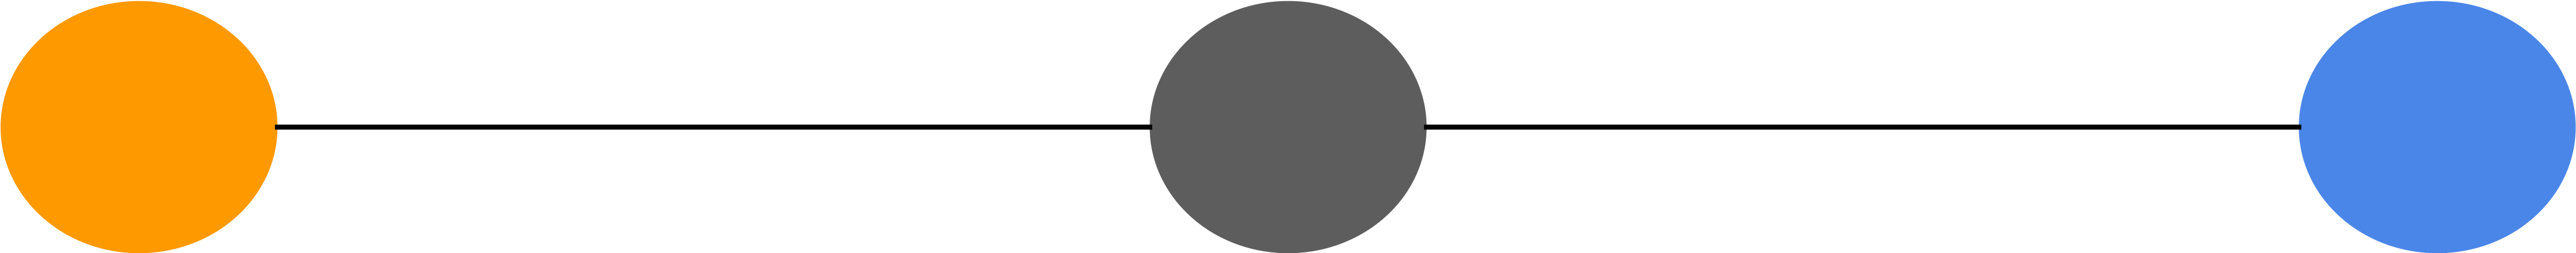 Engage - Circle (8008x758)